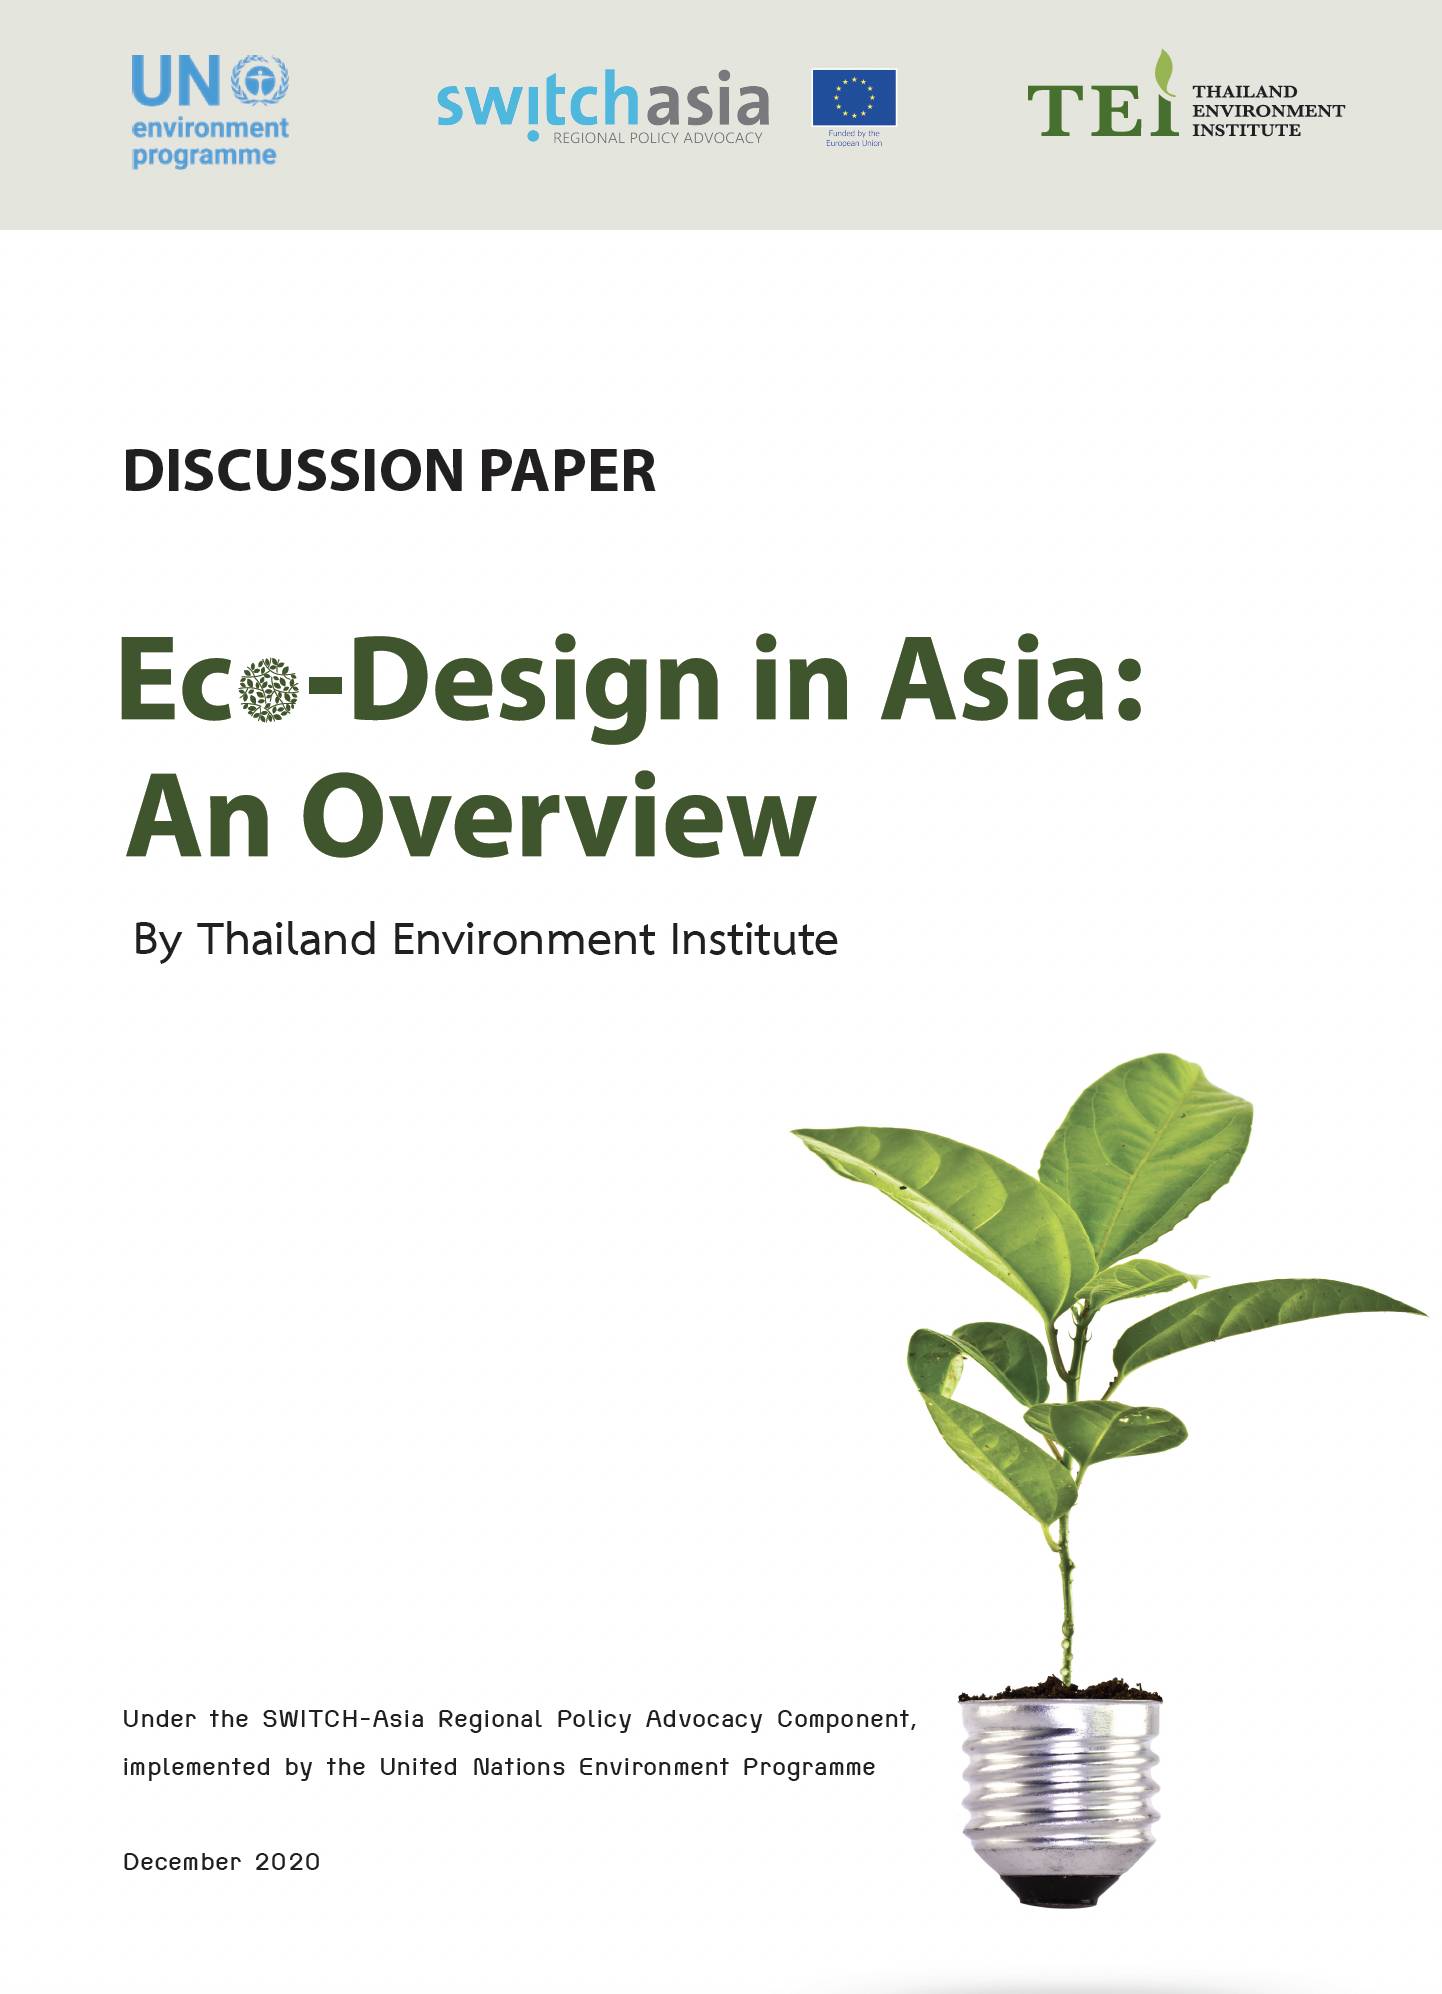 Eco-design in Asia